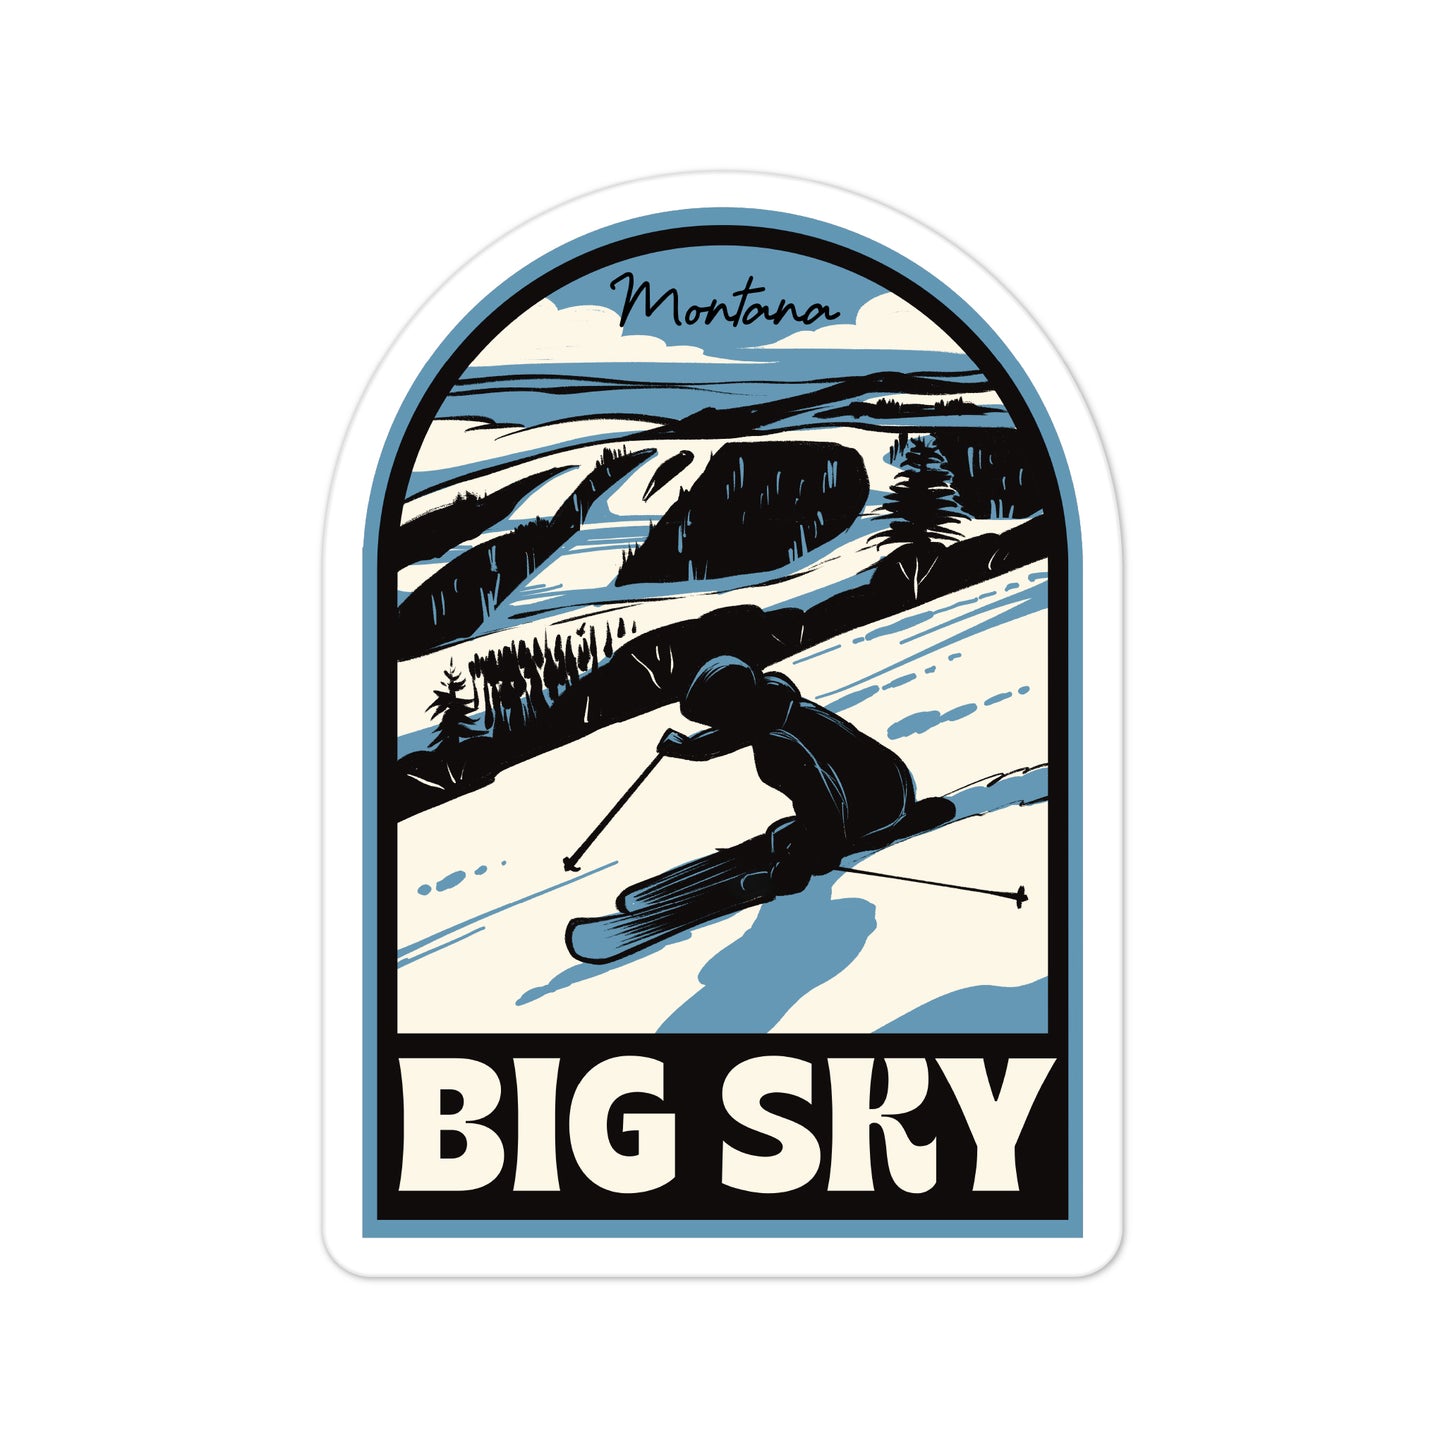 A sticker of Big Sky Montana